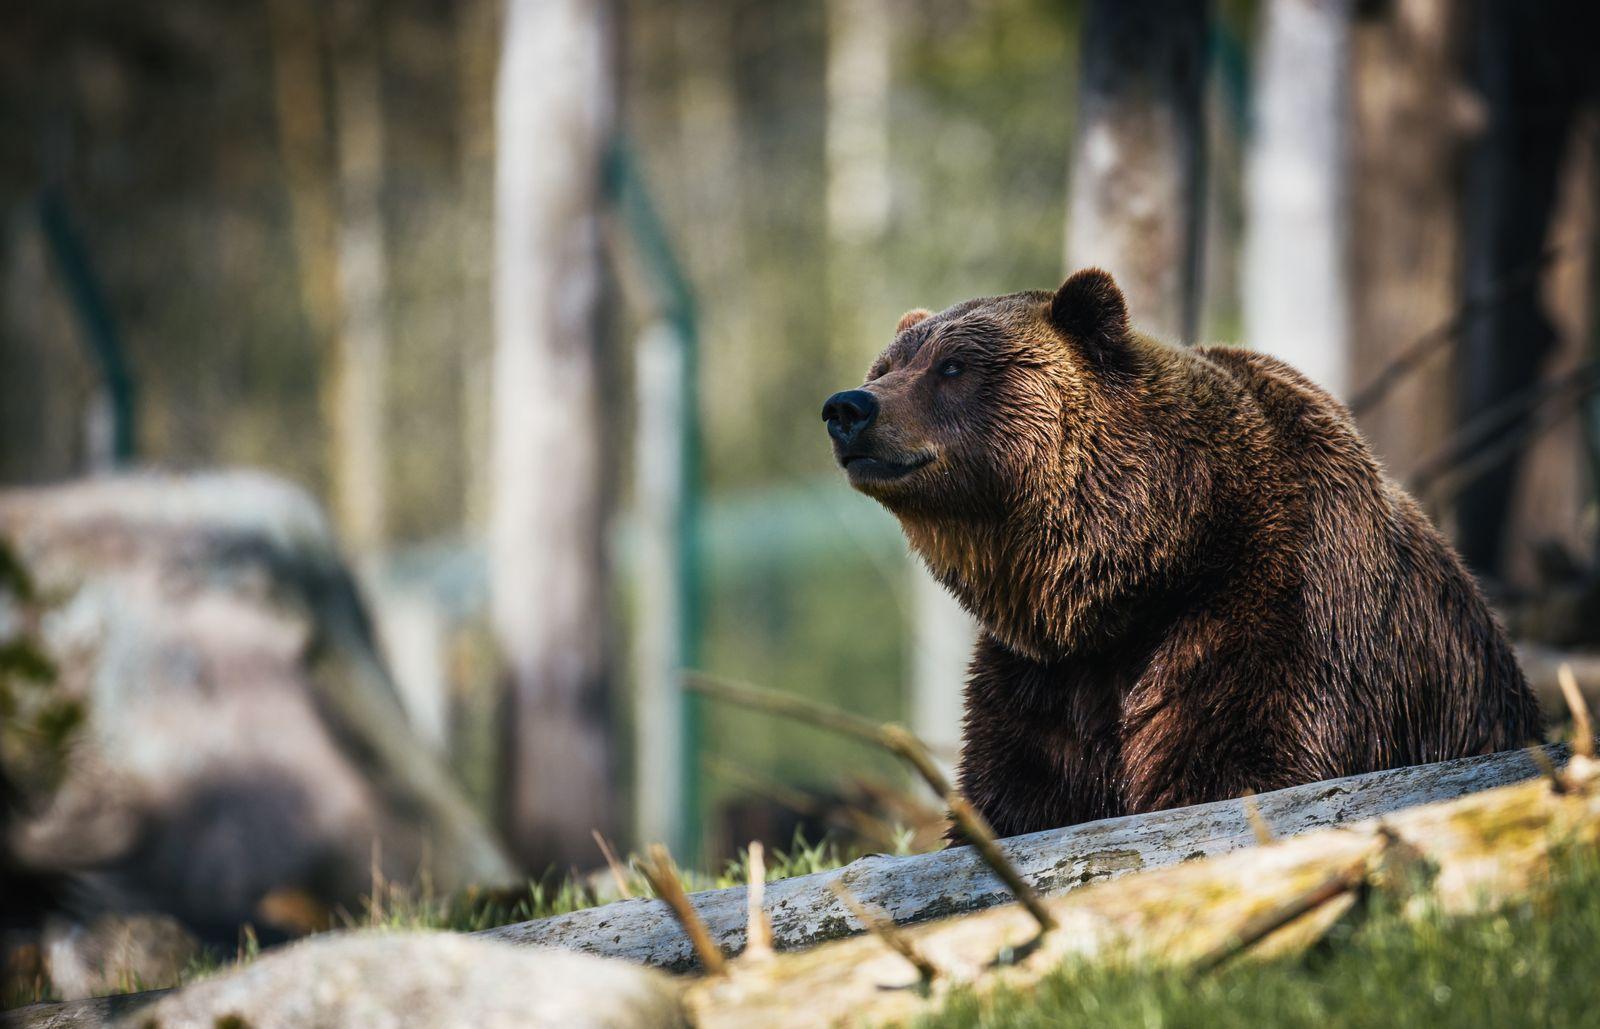 Медведь спас трехлетнего мальчика в лесу! И другие невероятные истории спасения детей животными